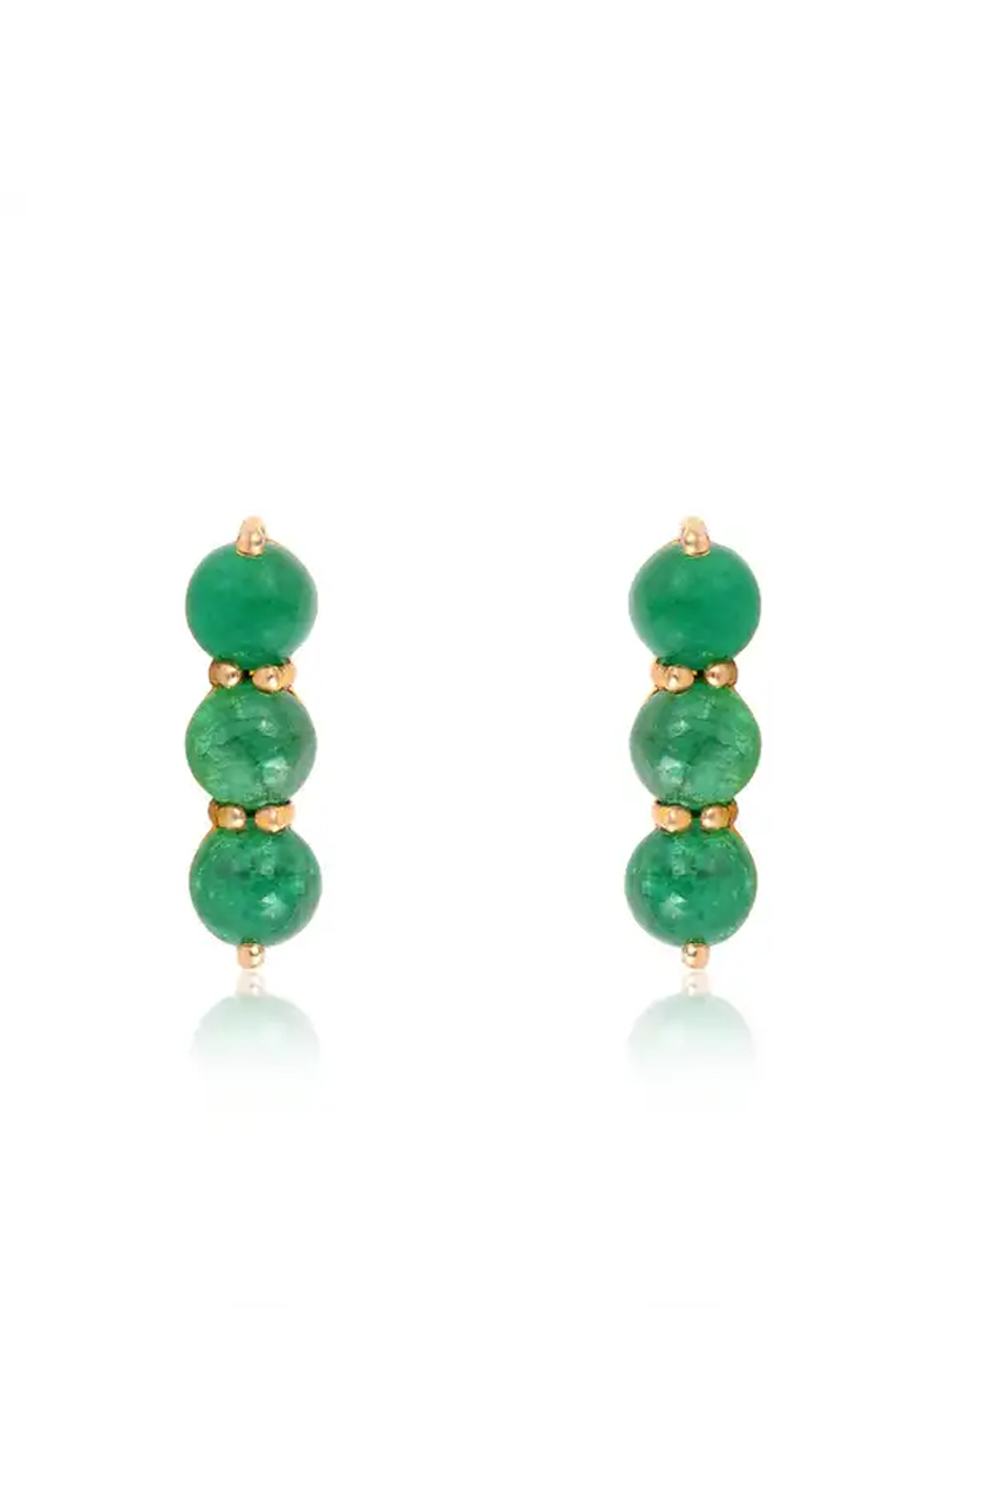 Emerald Stud Earrings in 14k Gold